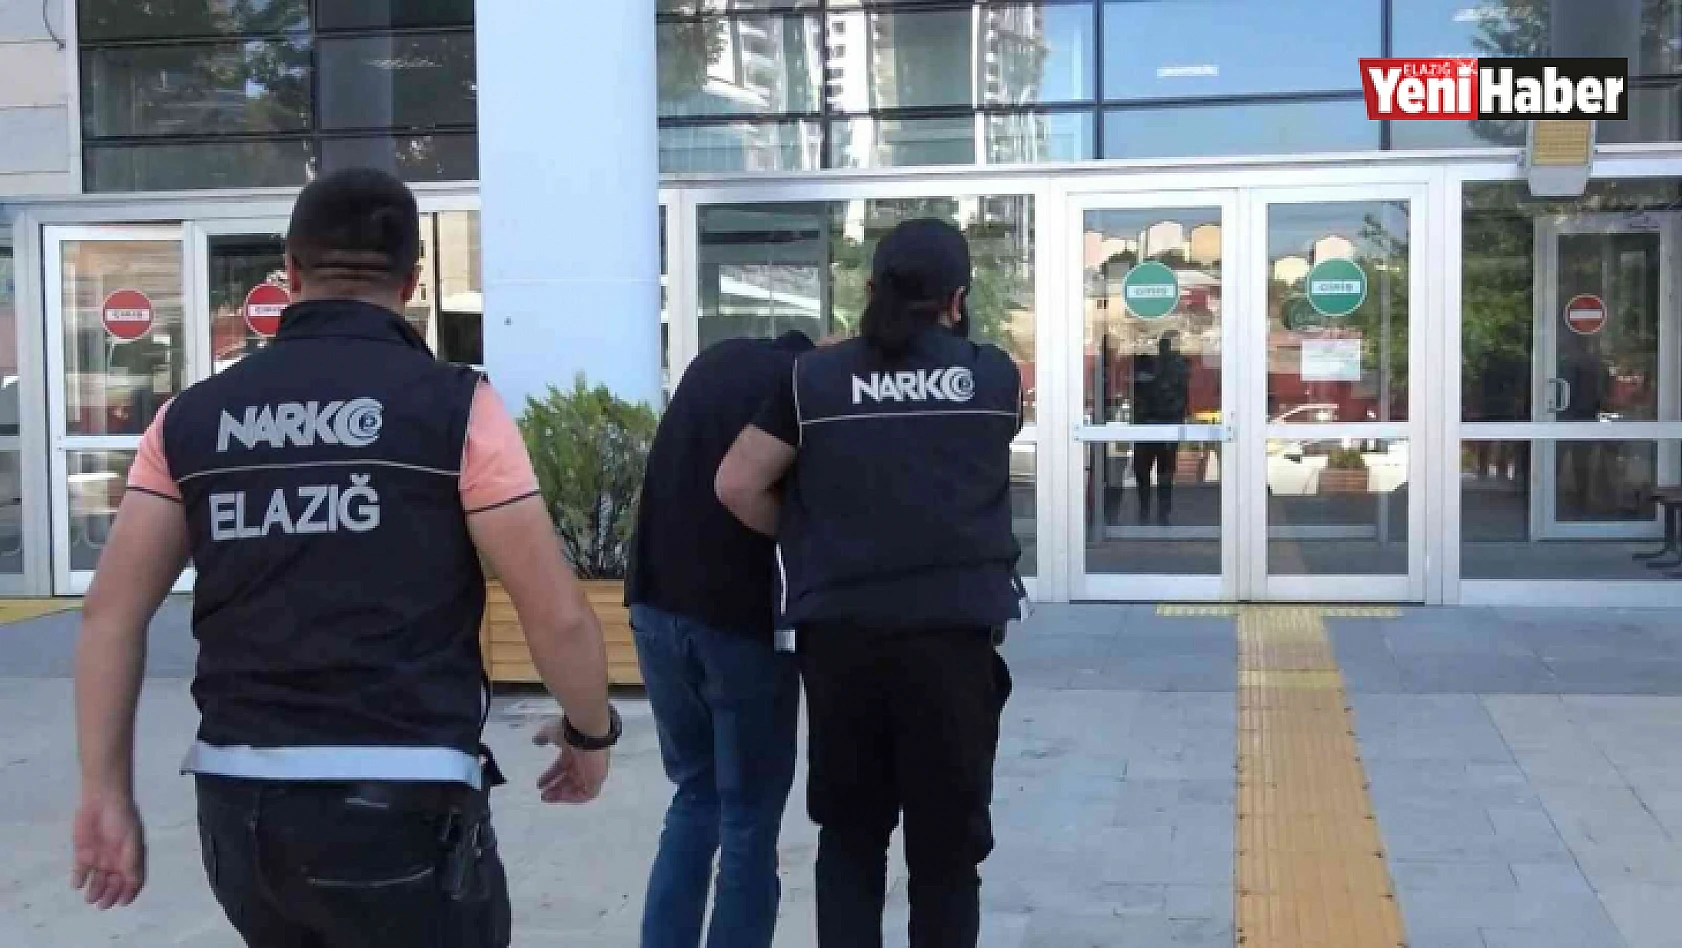 Elazığ'da uyuşturucu madde satan şüpheli tutuklandı